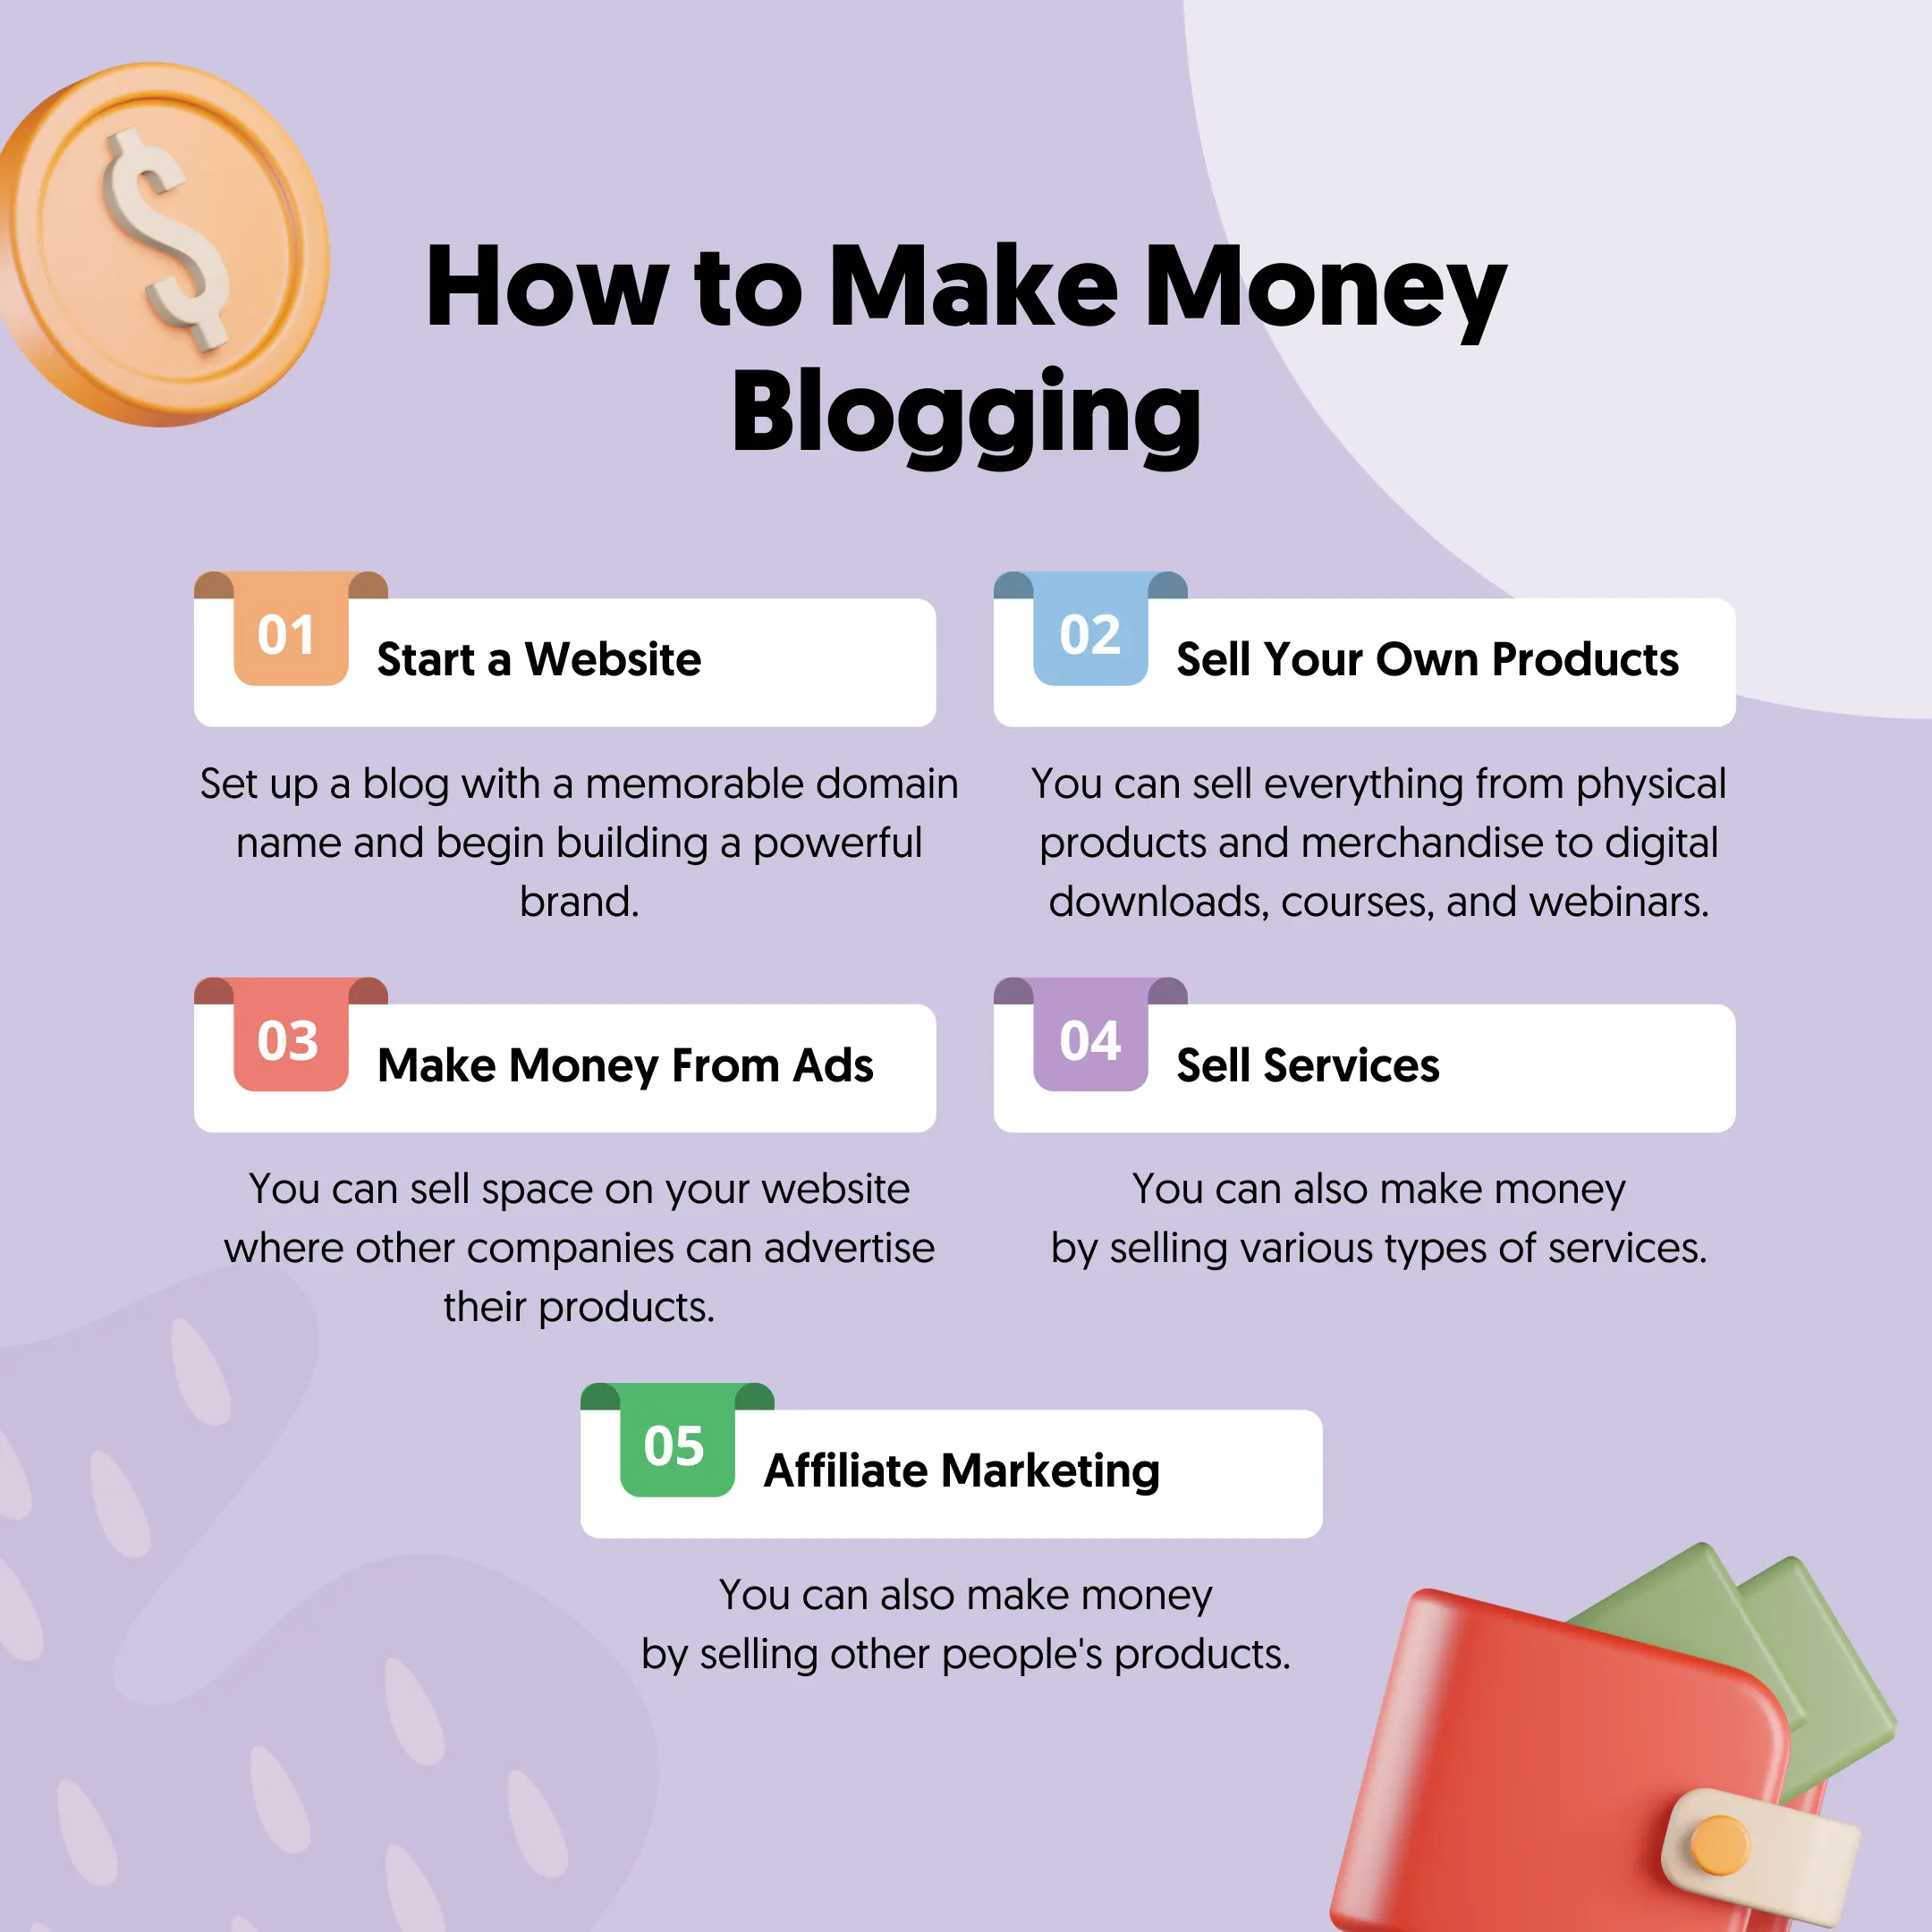 Ways to Make Money Blogging